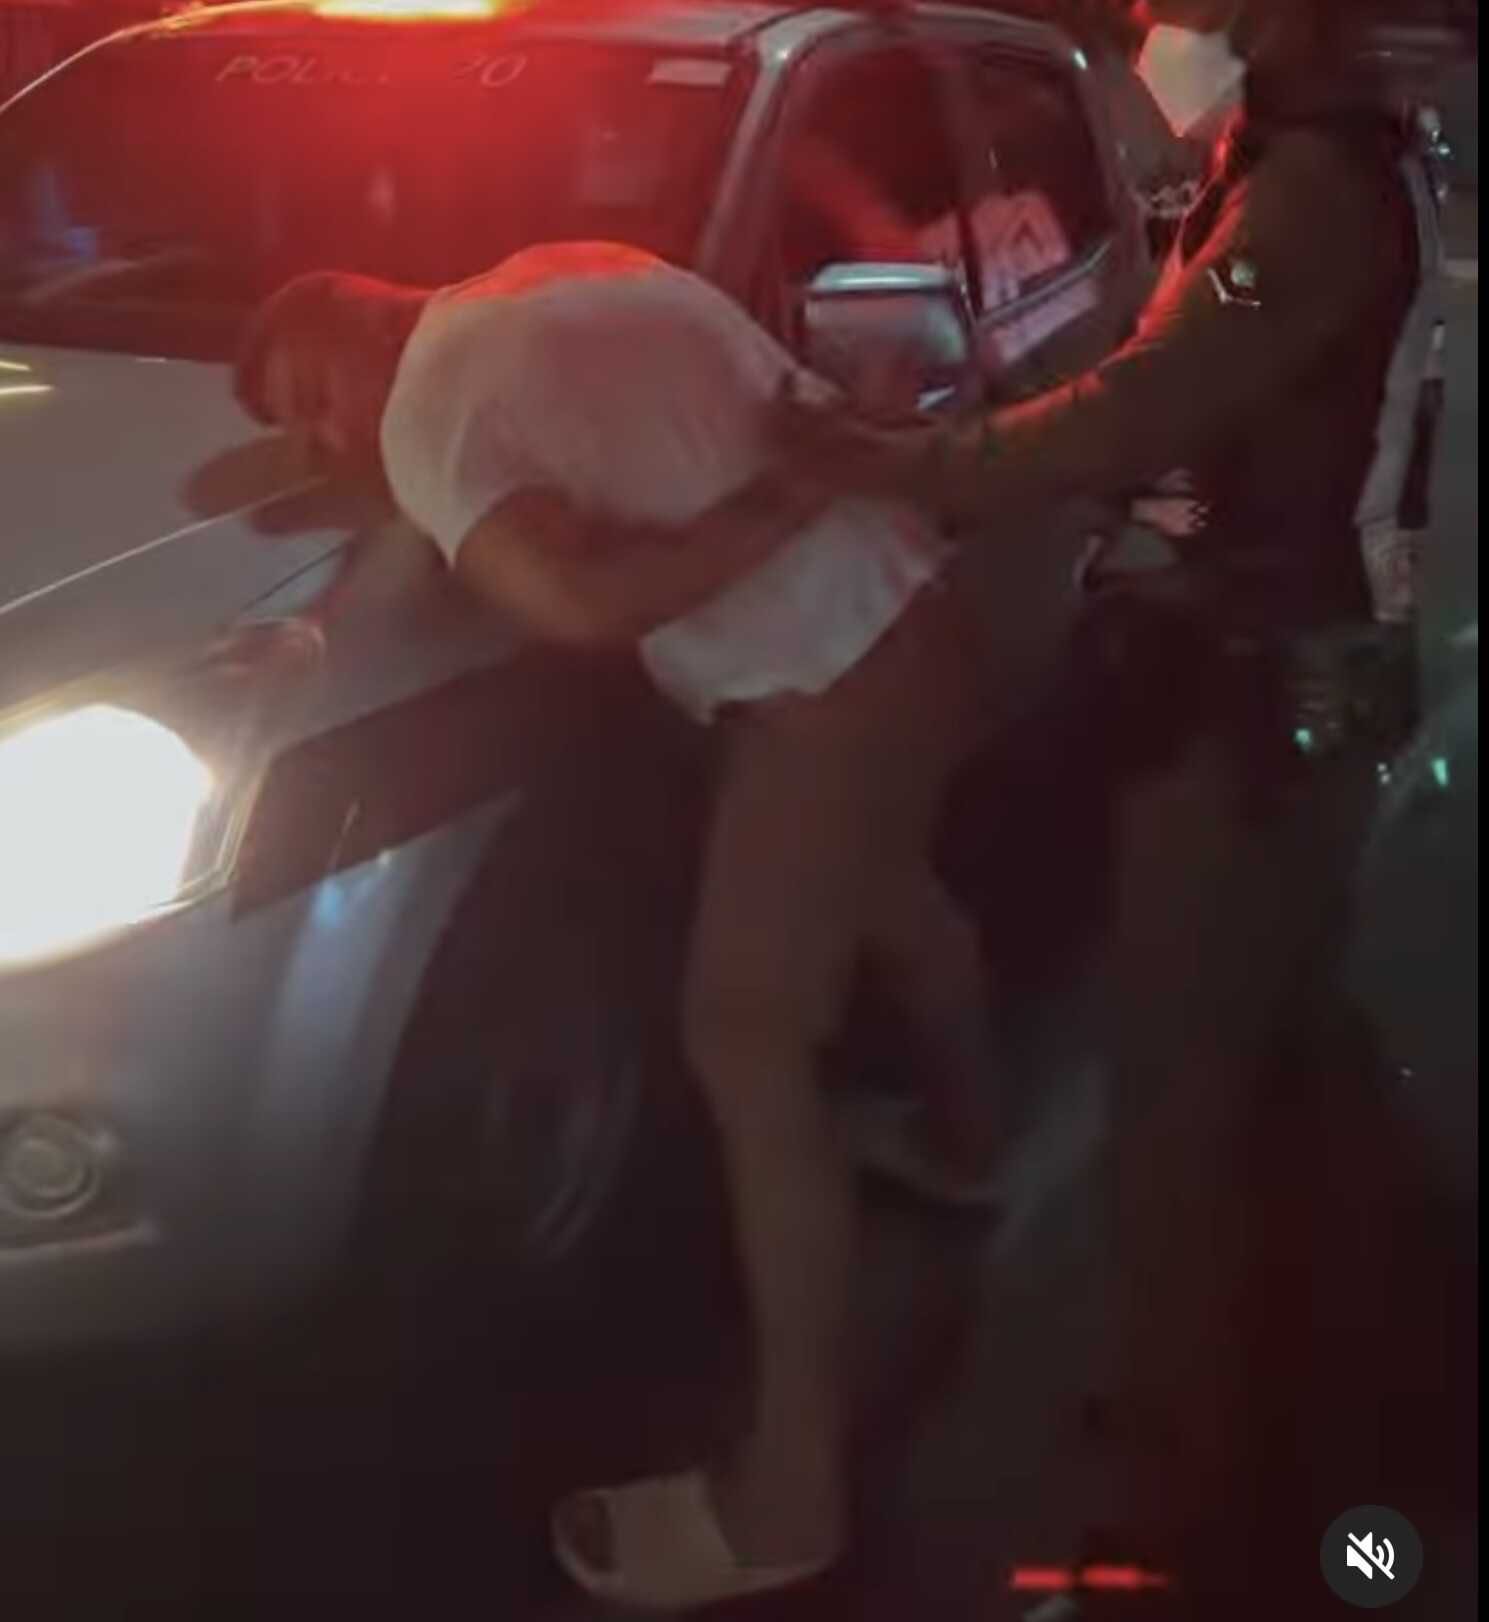 Получив увечья от тайских полицейских, Курбан Омаров продолжил отпуск, подкрепившись шаурмой и пивком, расстелив газетку среди улицы